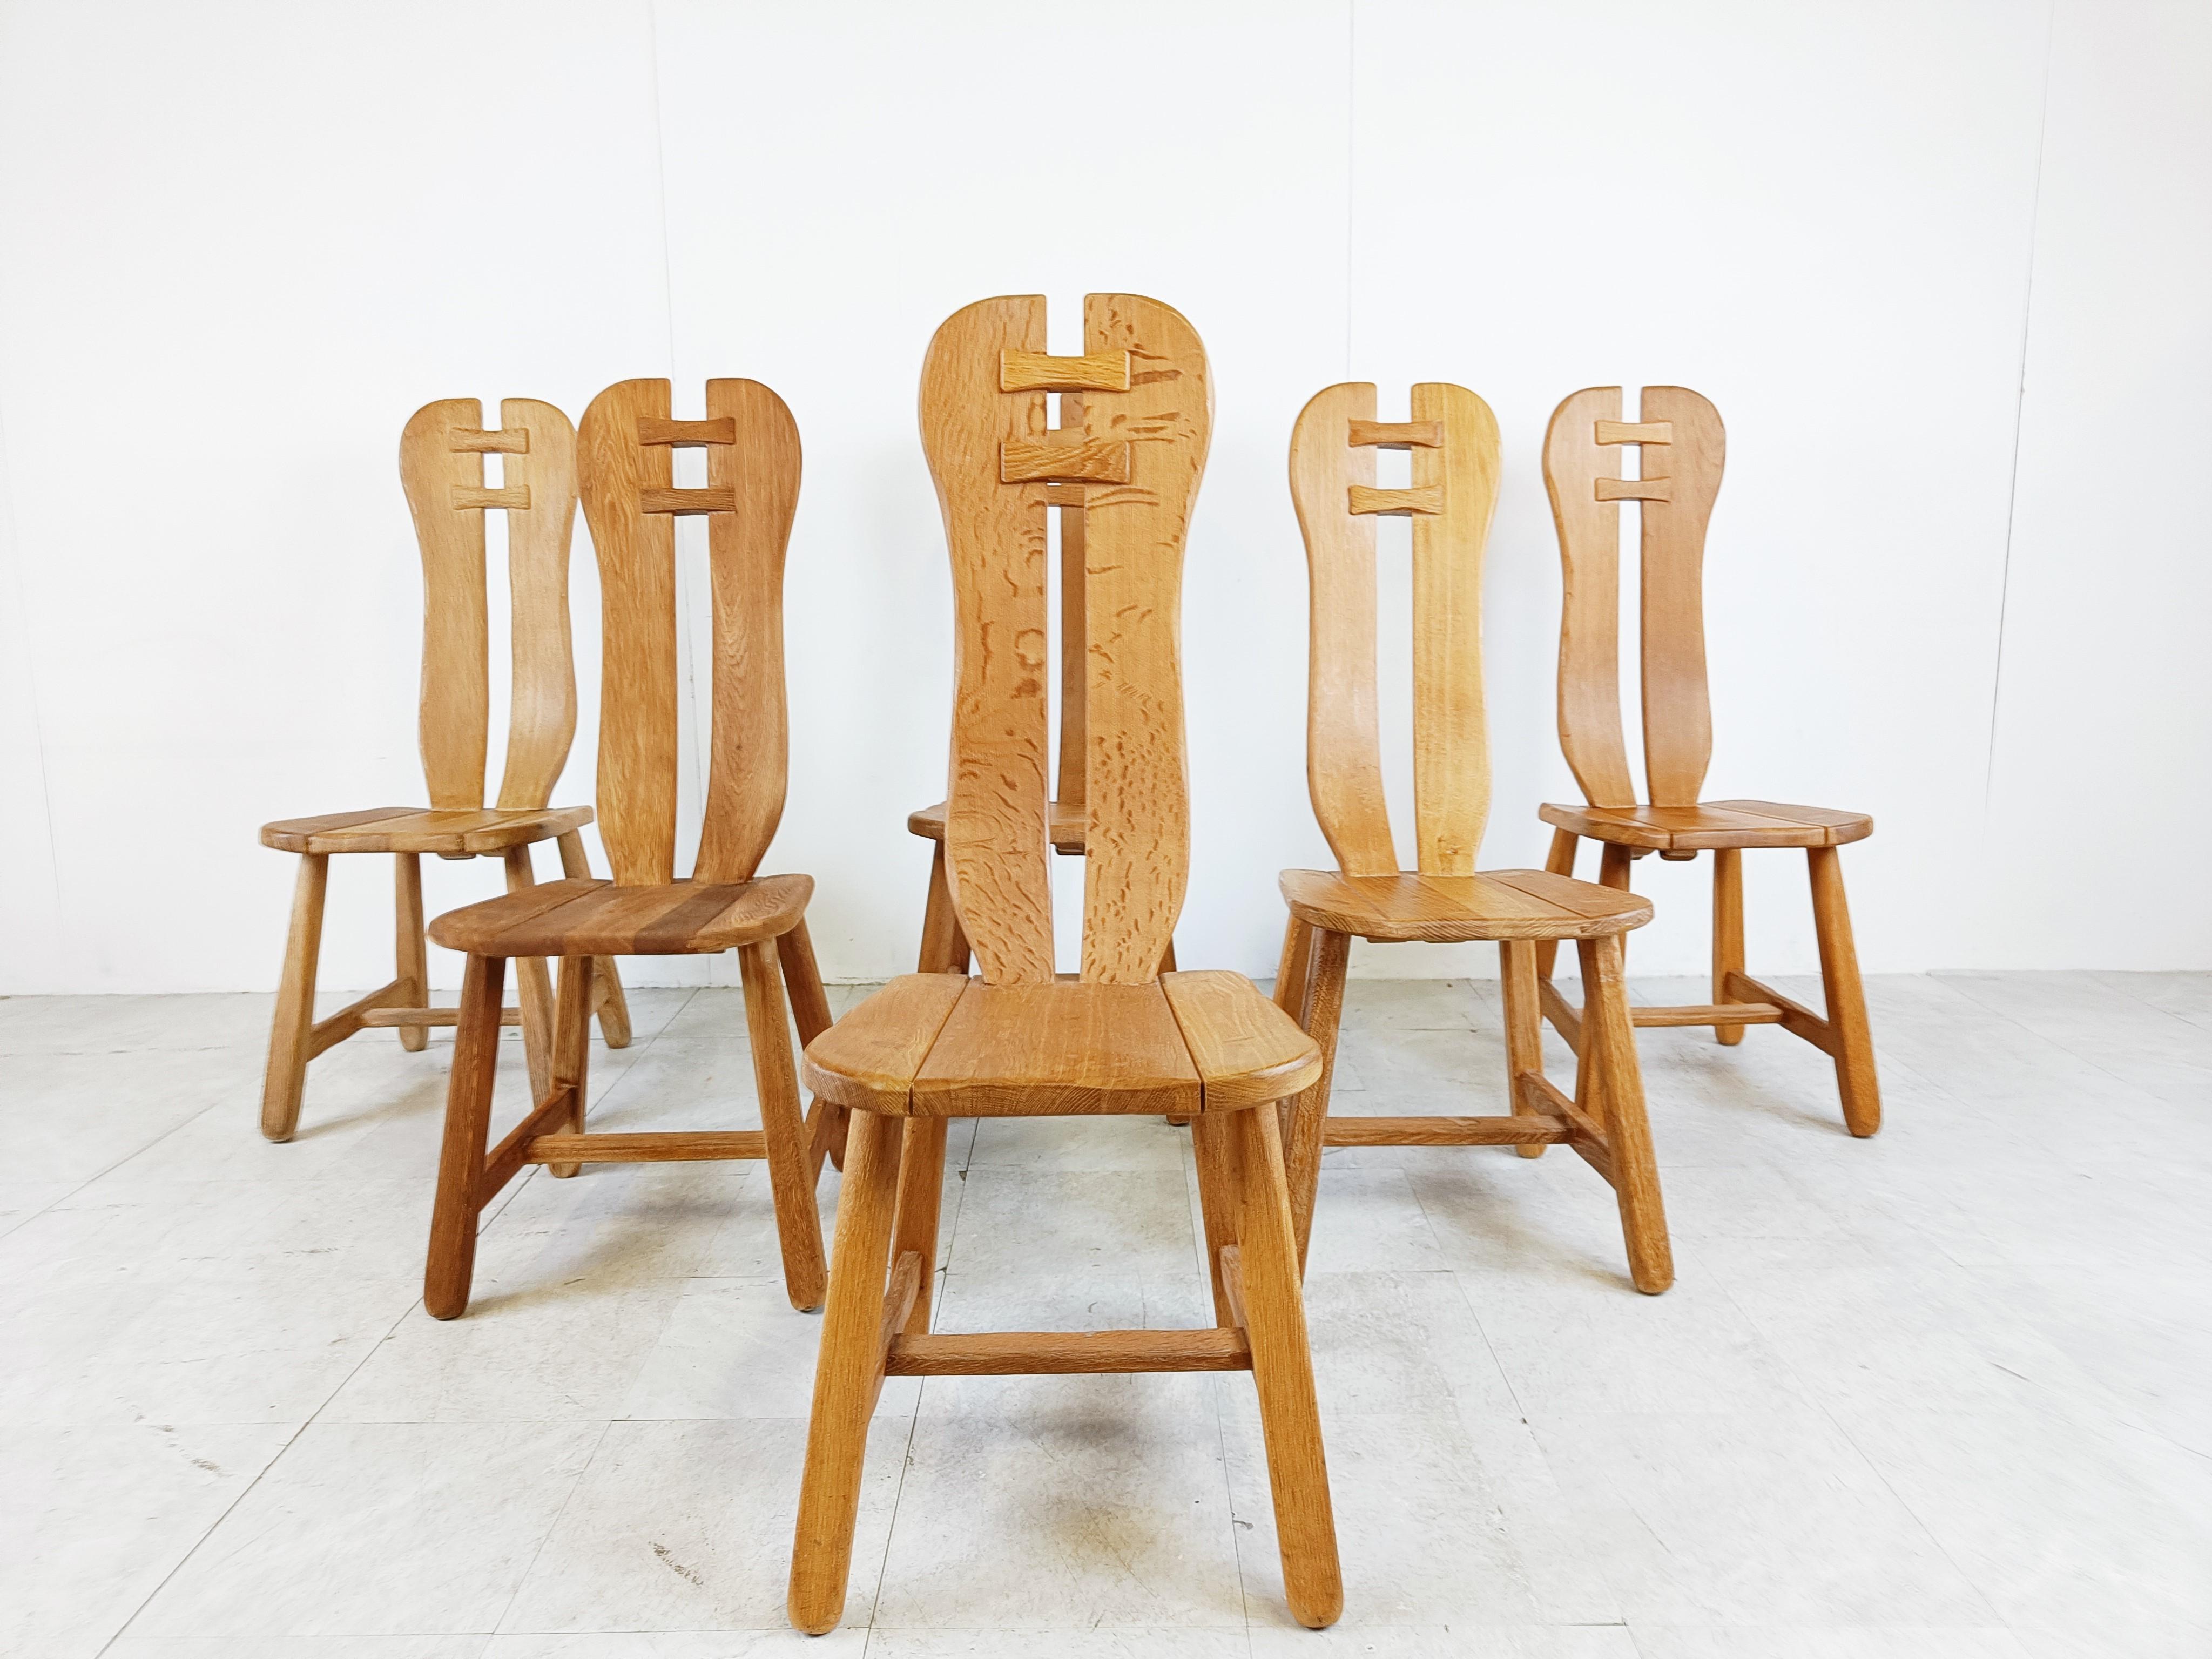 Chaises de salle à manger robustes et fabriquées à la main par Depuydt Kunstmeubelen en Belgique.

Les chaises sont fabriquées en chêne massif.

Magnifique dos fendu avec des pièces en bois qui s'emboîtent les unes dans les autres.

Ces